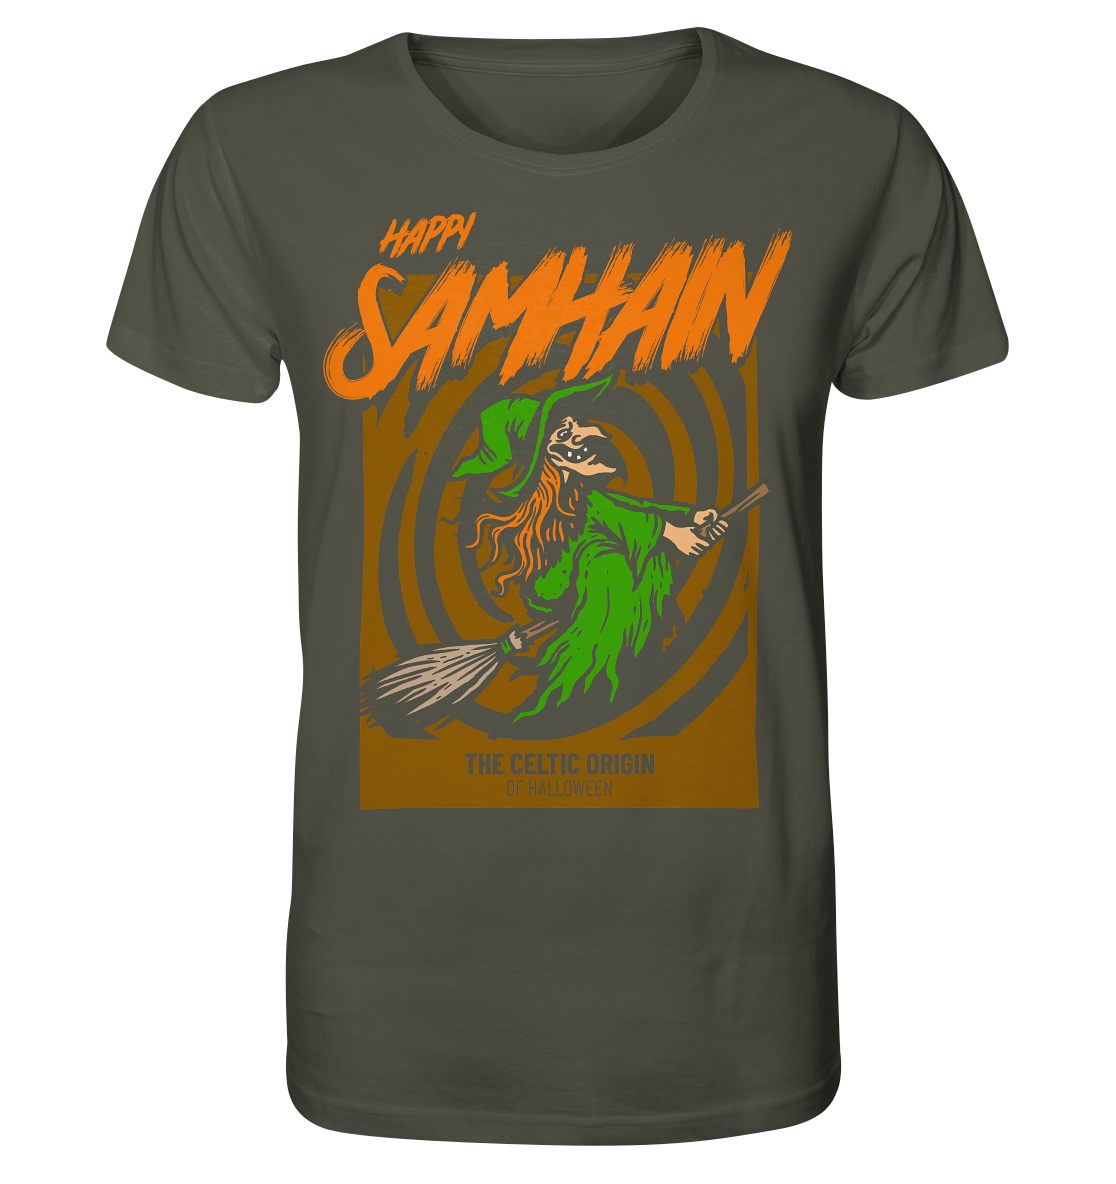 Happy Samhain "Witch" - Organic Shirt